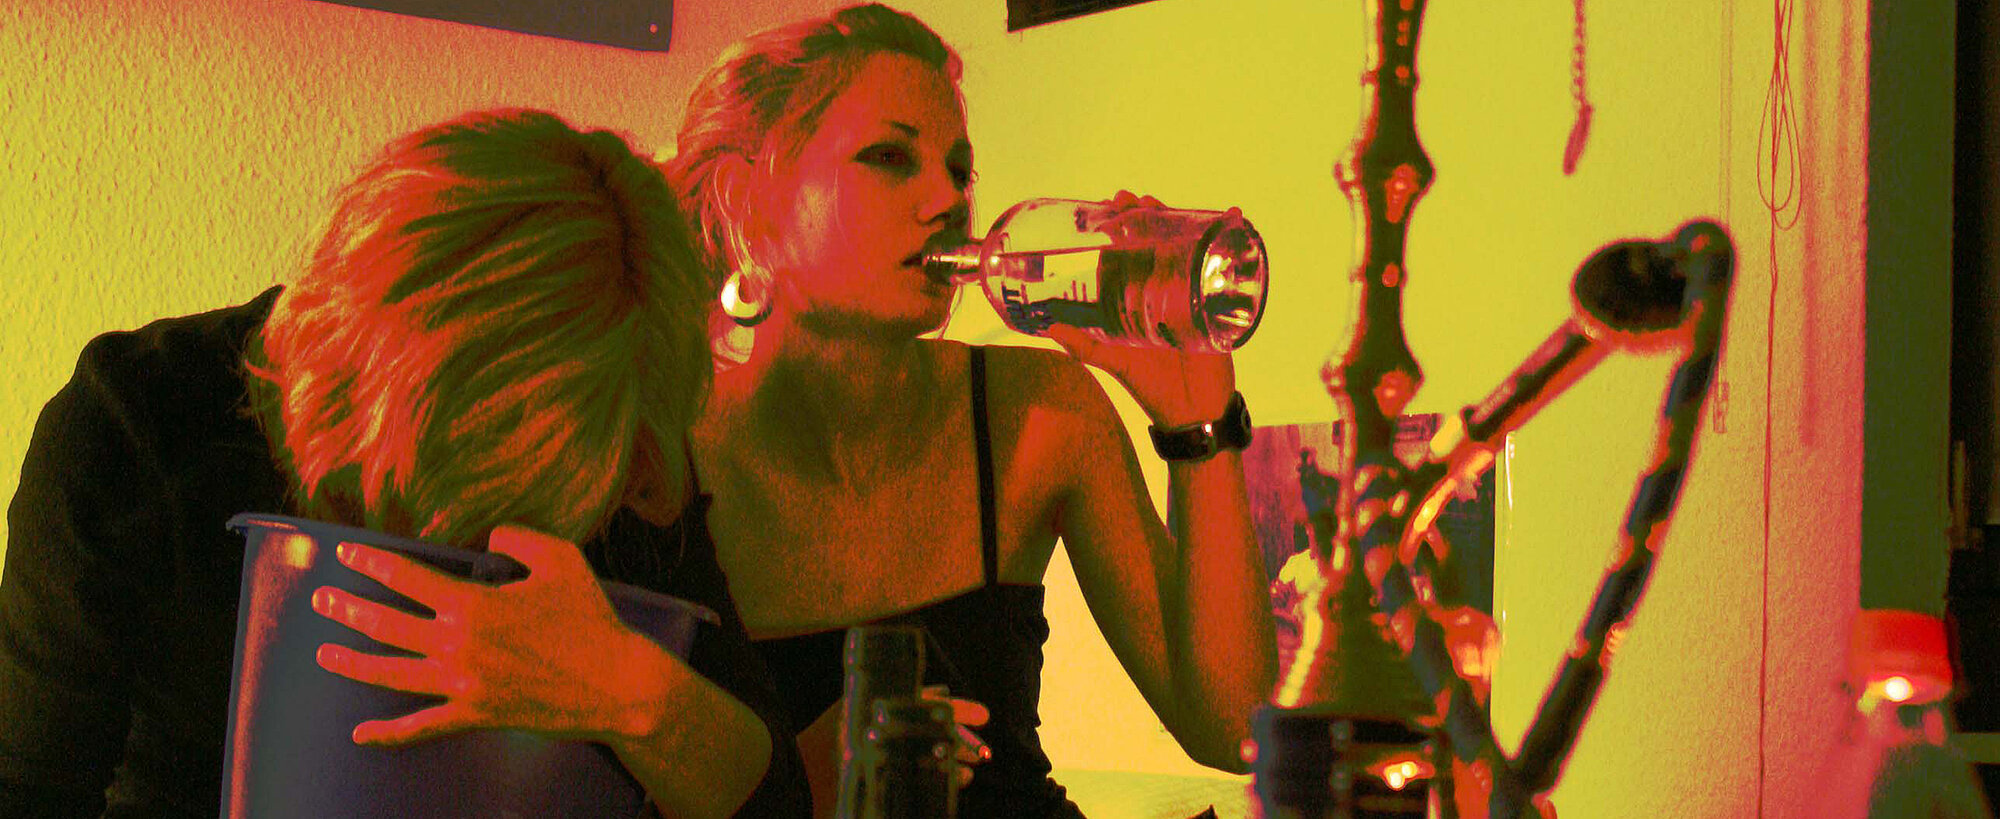 Startbild: Foto vom Alkoholpräventionsprojekt "Hackedicht - Besser geht's dir ohne!": Ein Mädchen trinkt Alkohol, ein zweites Mädchen erbricht sich in einen Putzeimer